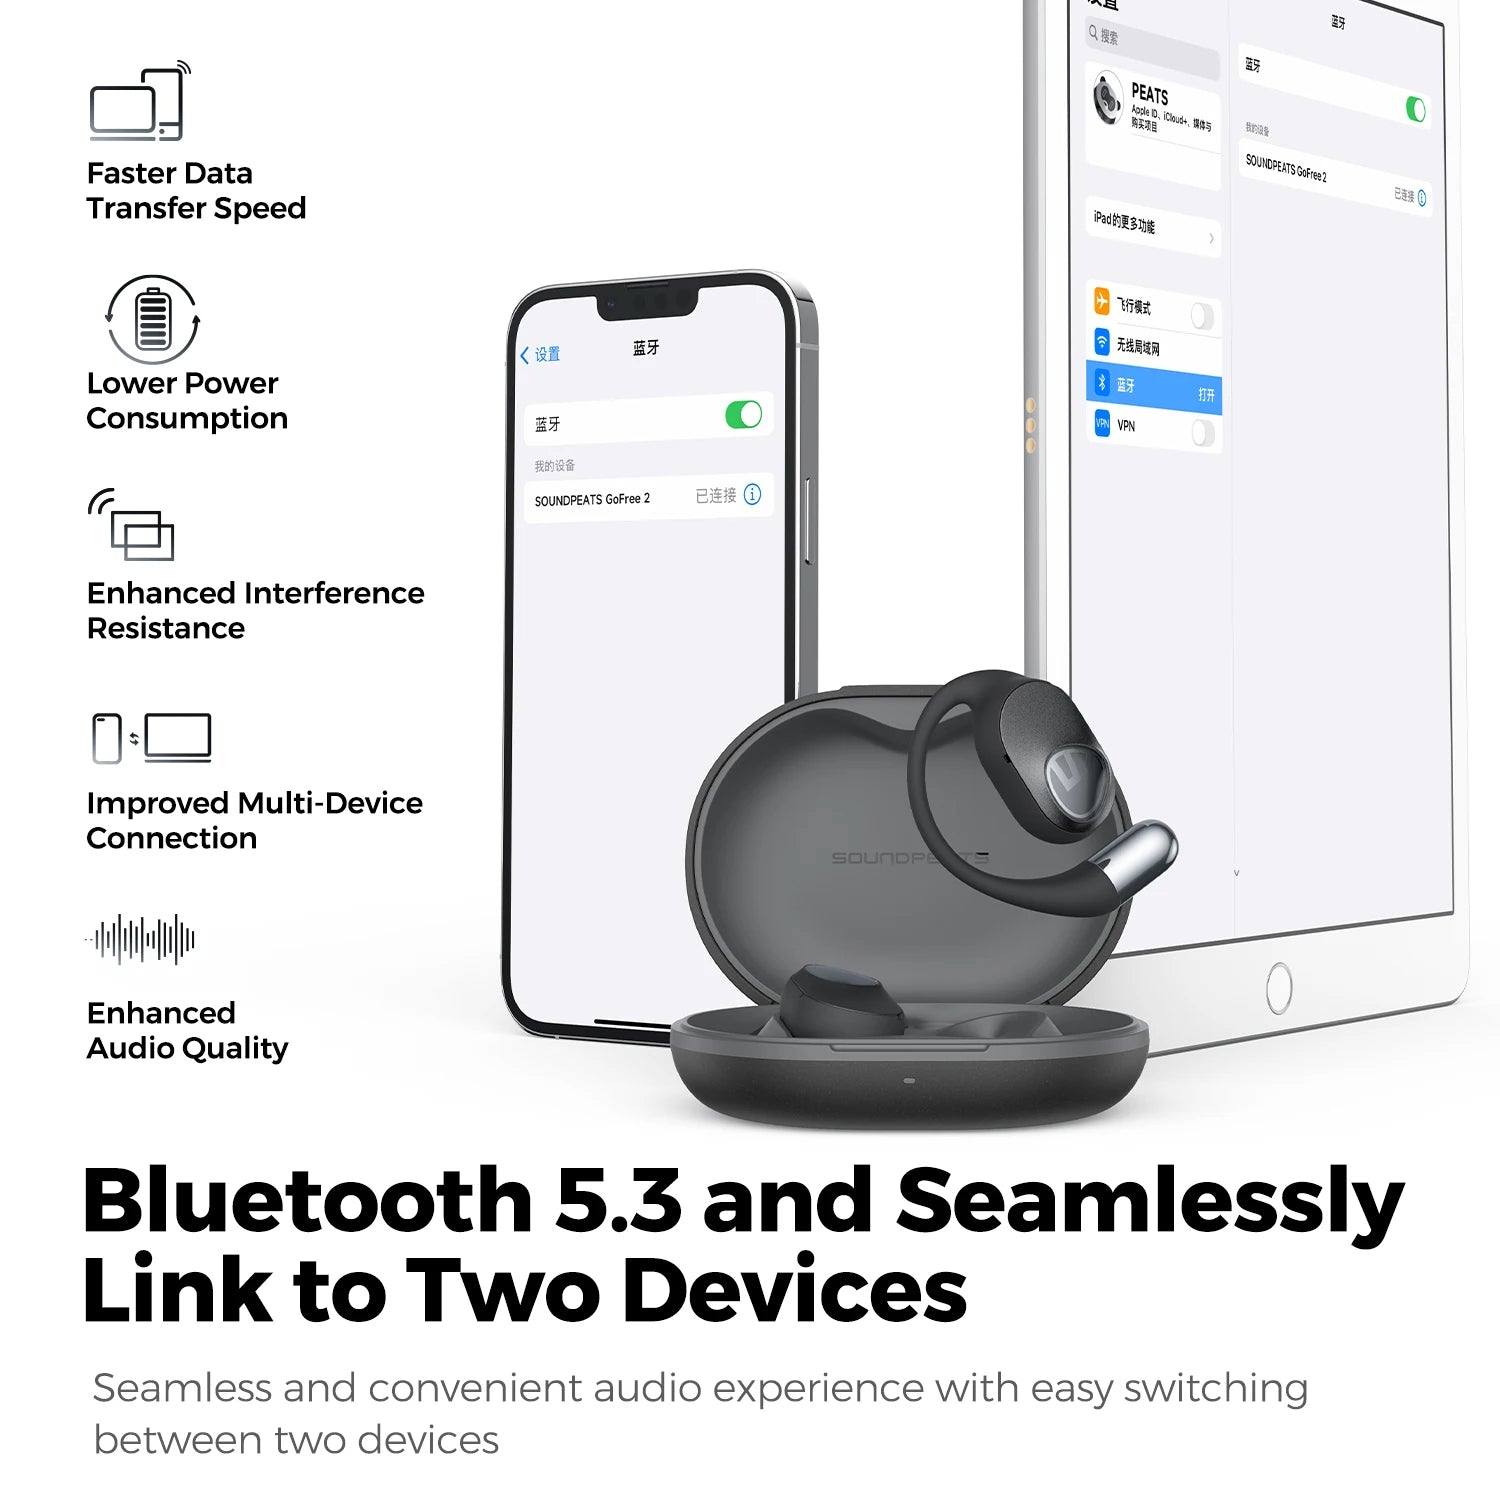 New SoundPEATS GoFree2 Open-Ear Earphones Bluetooth 5.3 Earbuds - A1Smartstore®